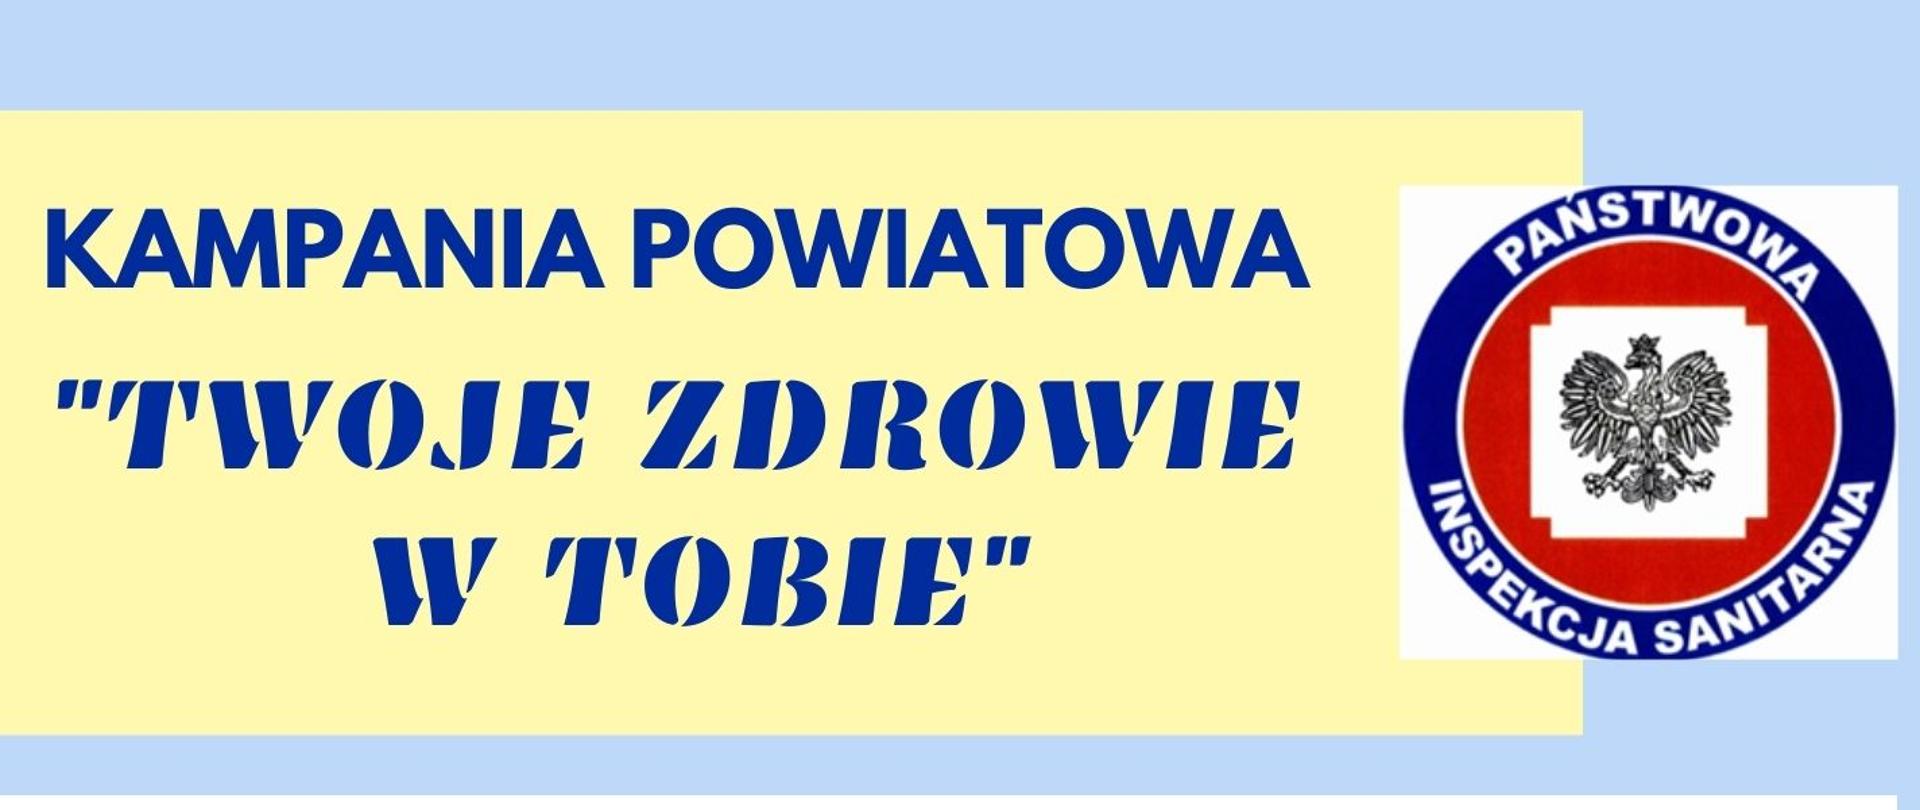 Kampania_Powiatowa_Twoje_Zdrowie_w_Tobie